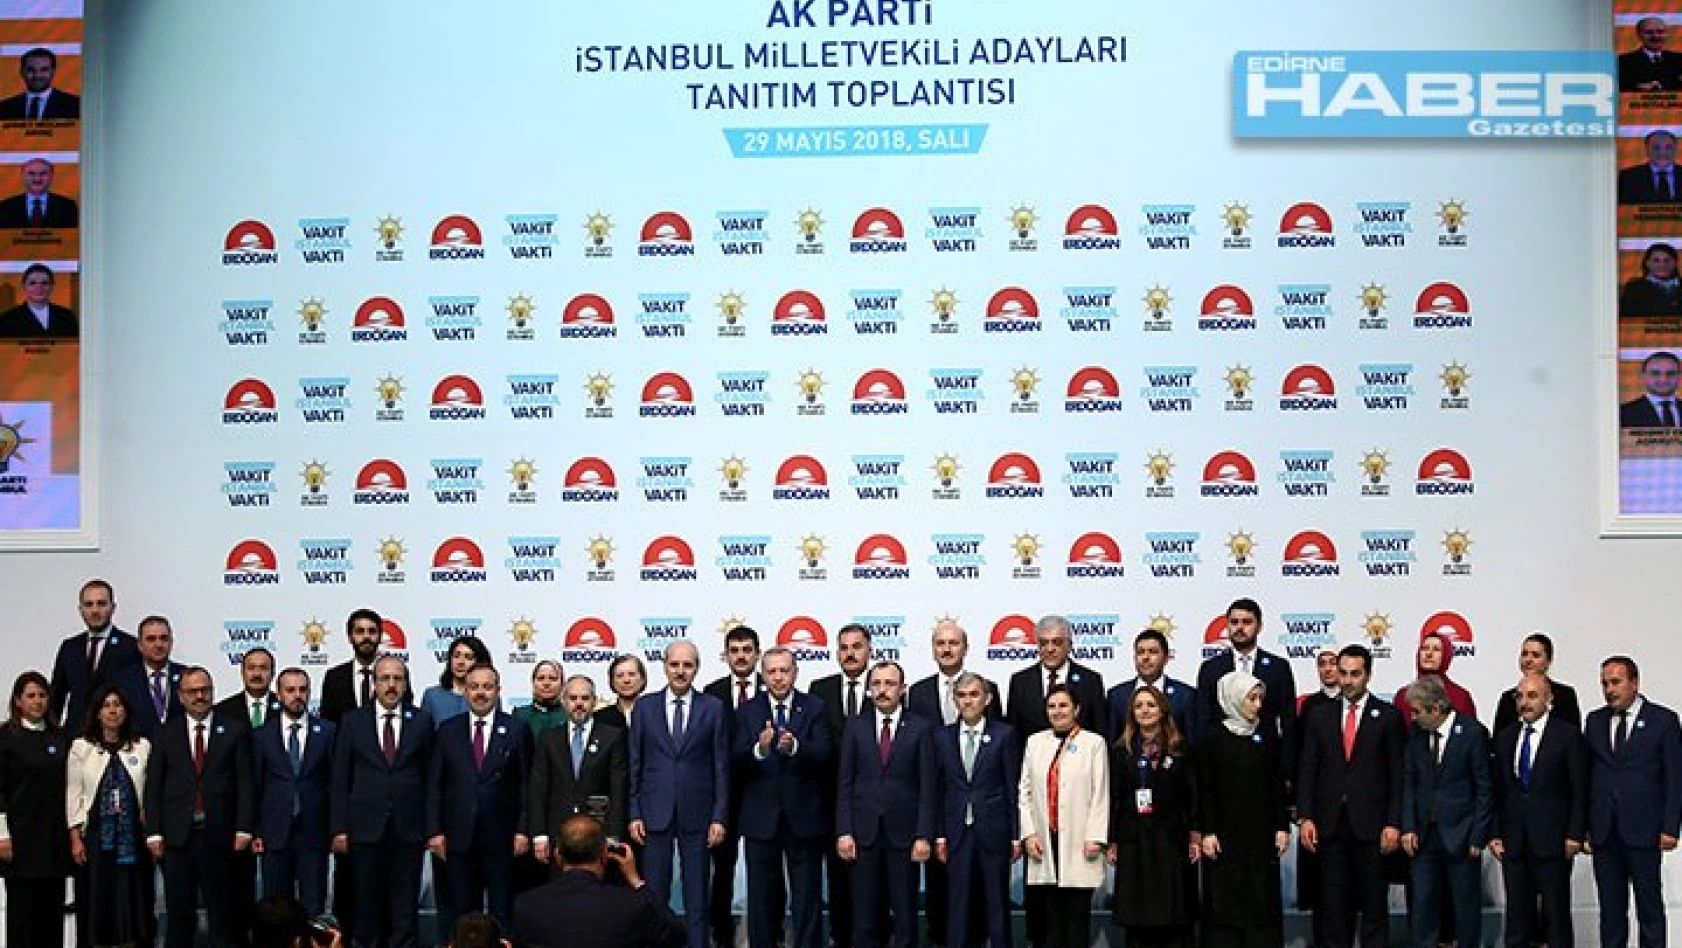 Ak Parti İstanbul aday tanıtım programı gerçekleştirildi